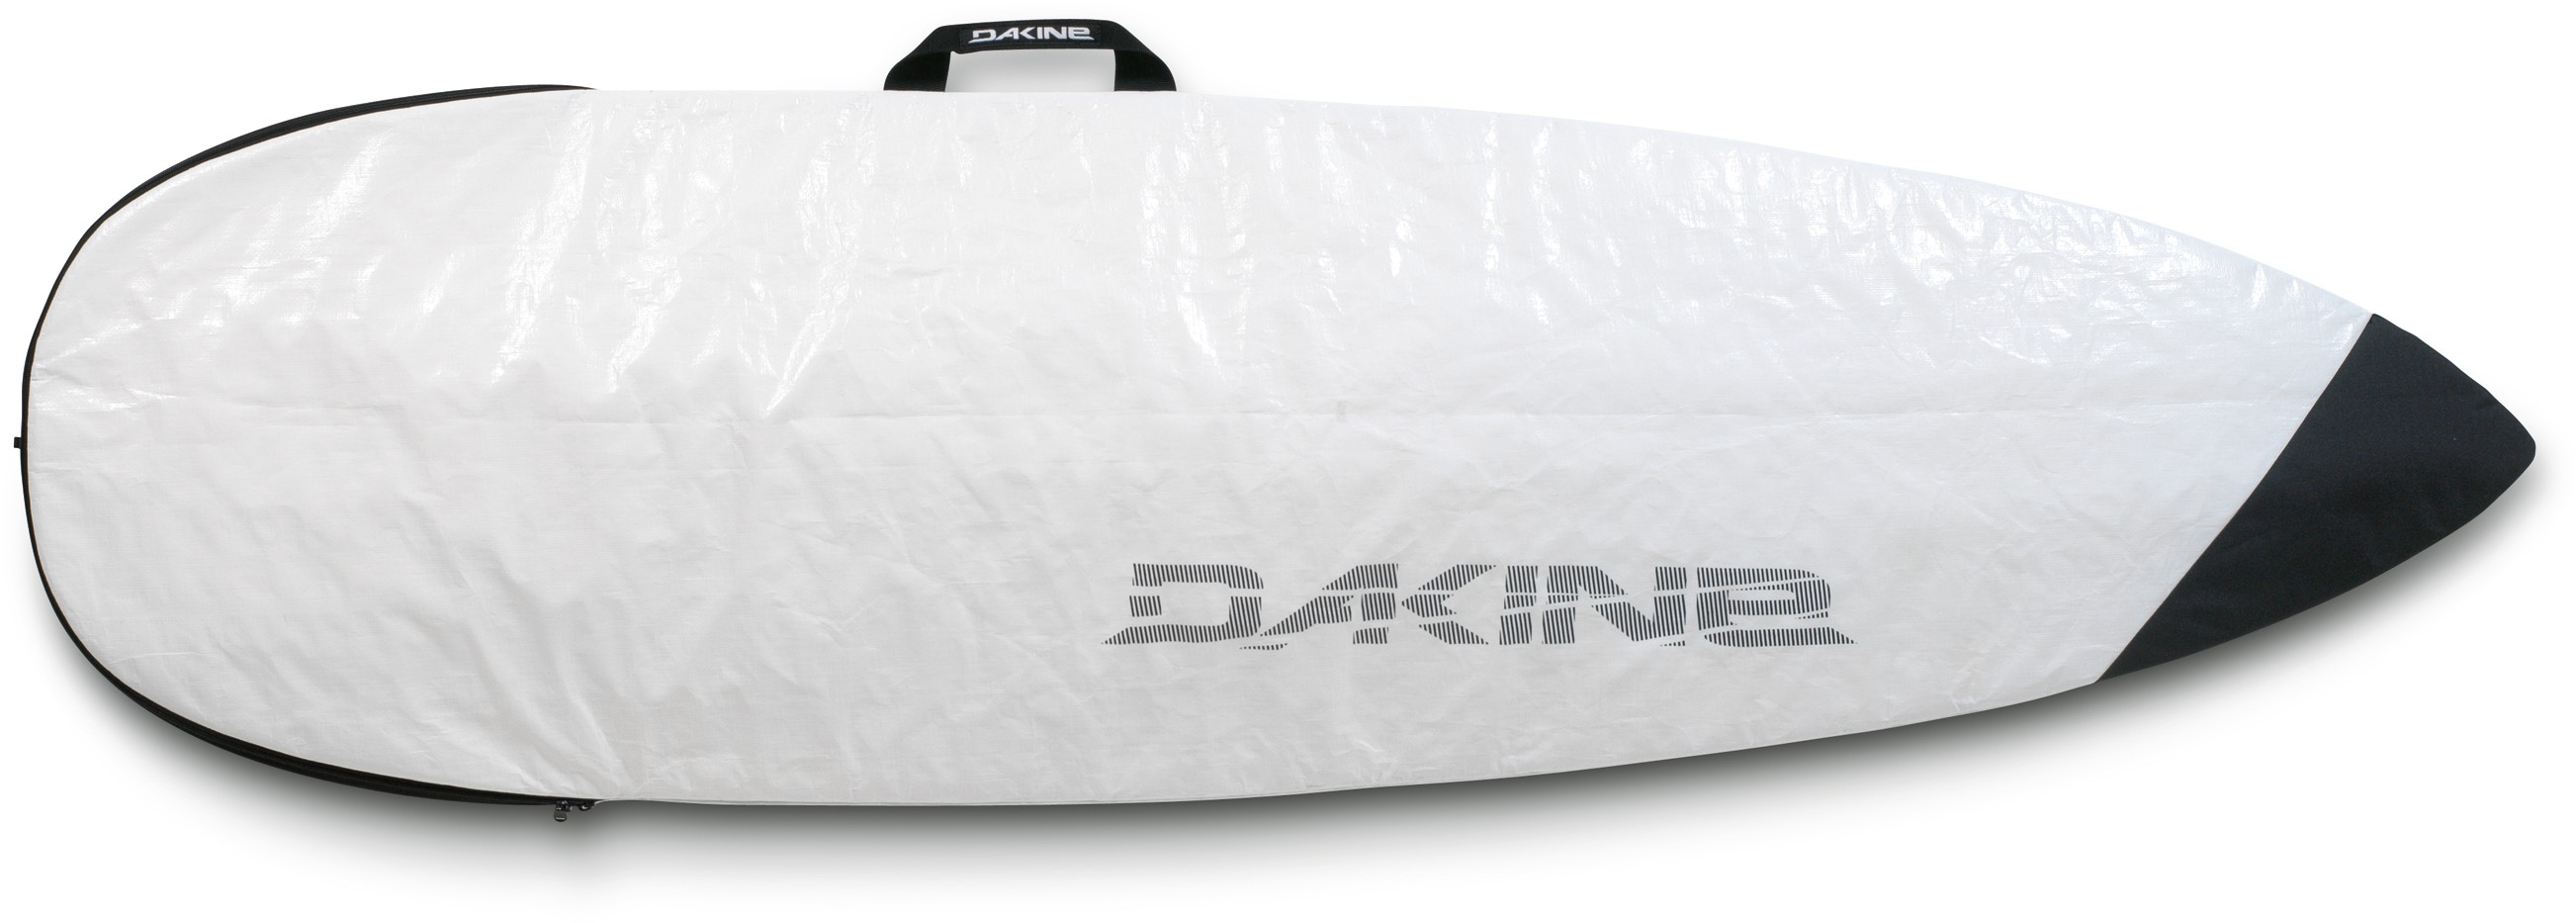 SHUTTLE SURF BAG THRUSTER 6'6, WHITE